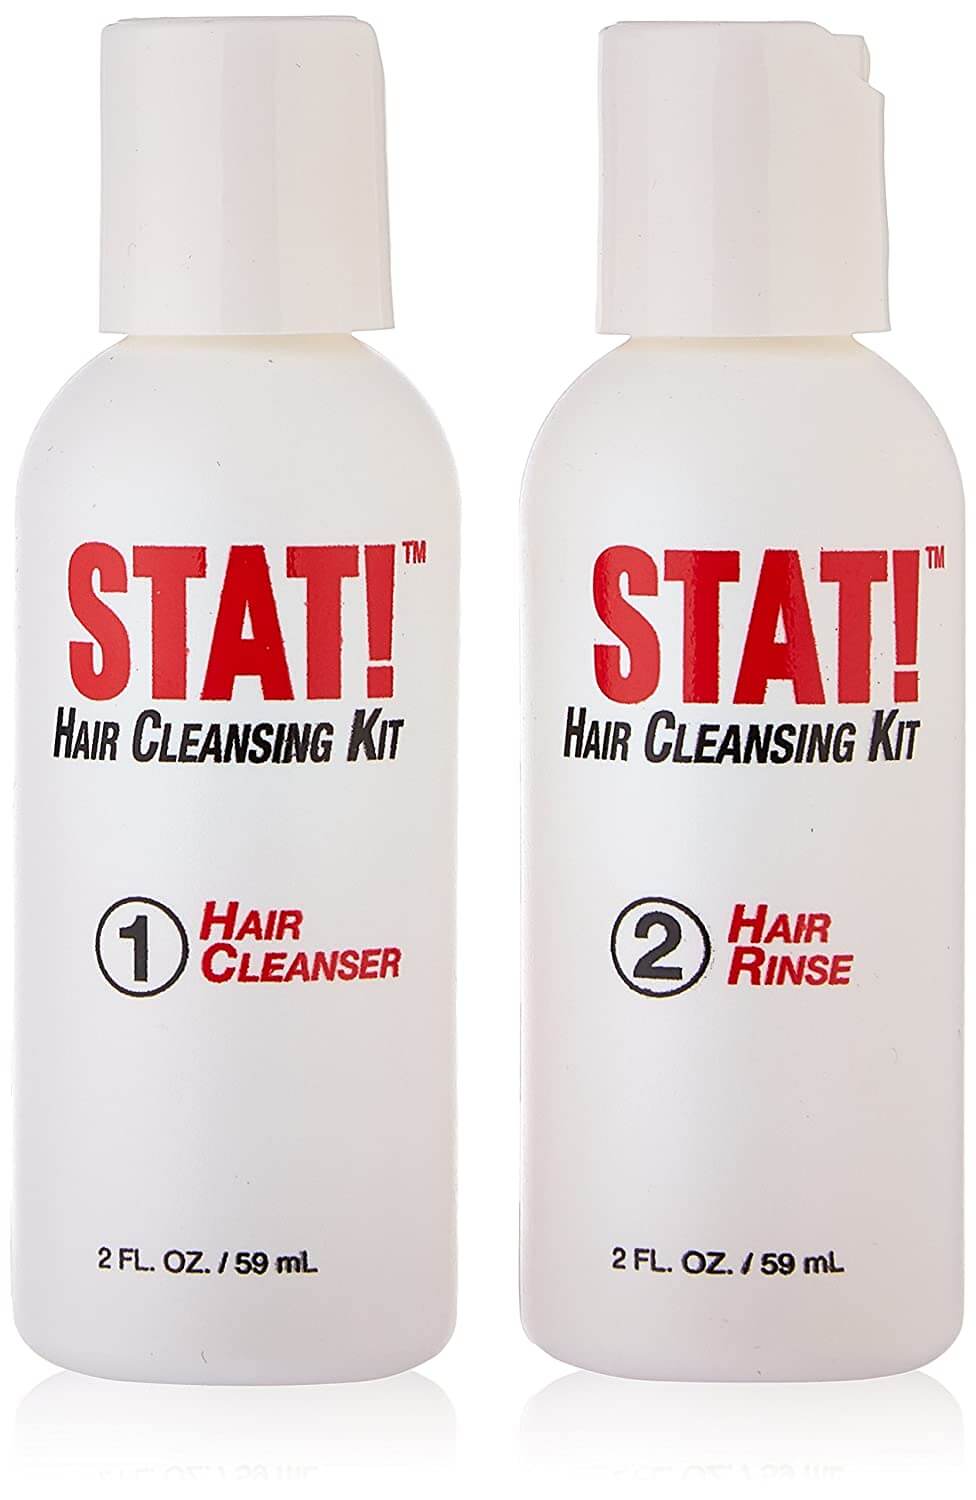  Sarken Nutrition Stat Hair Detox Shampoo Kit